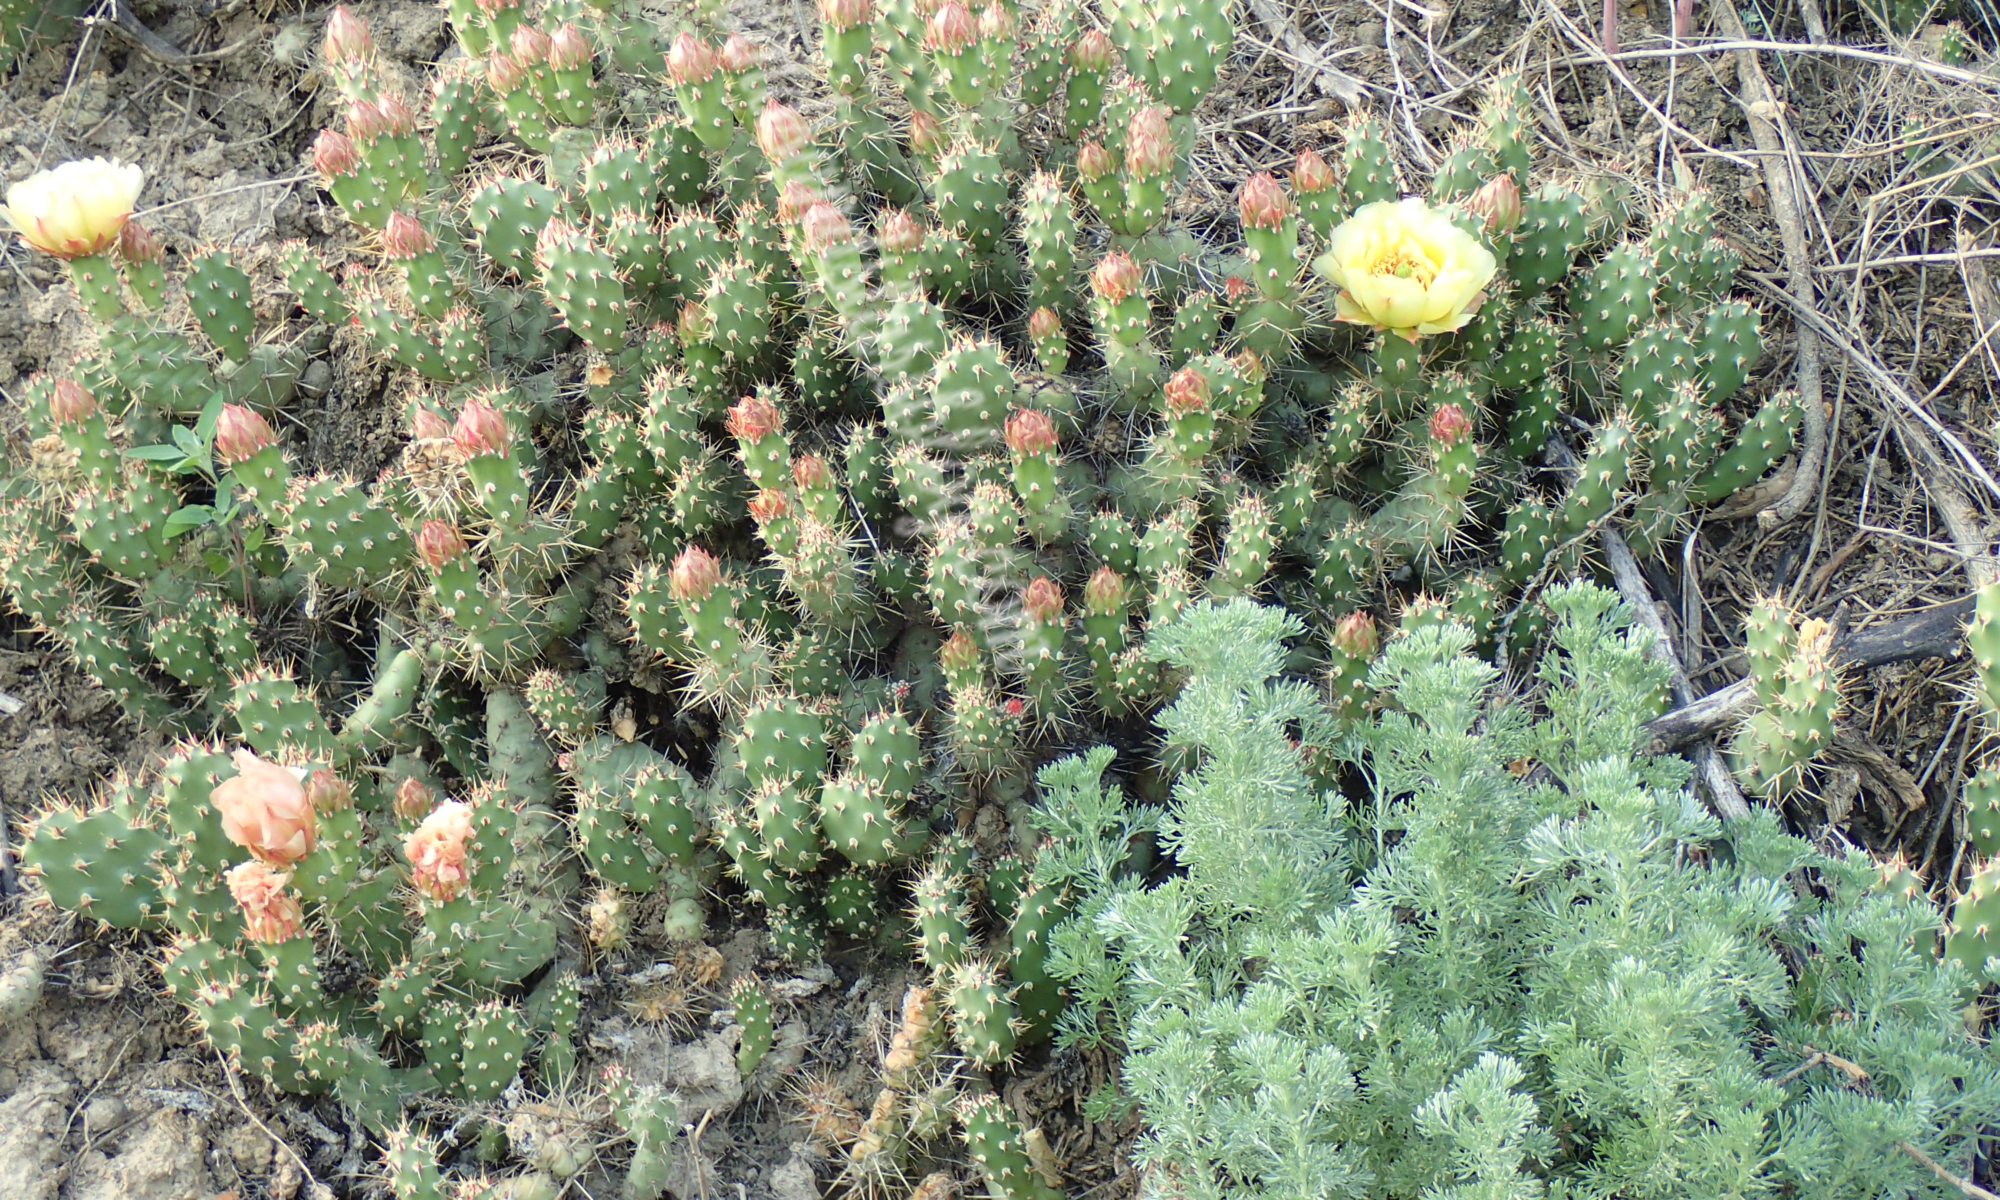 Where the wild cactuses grow